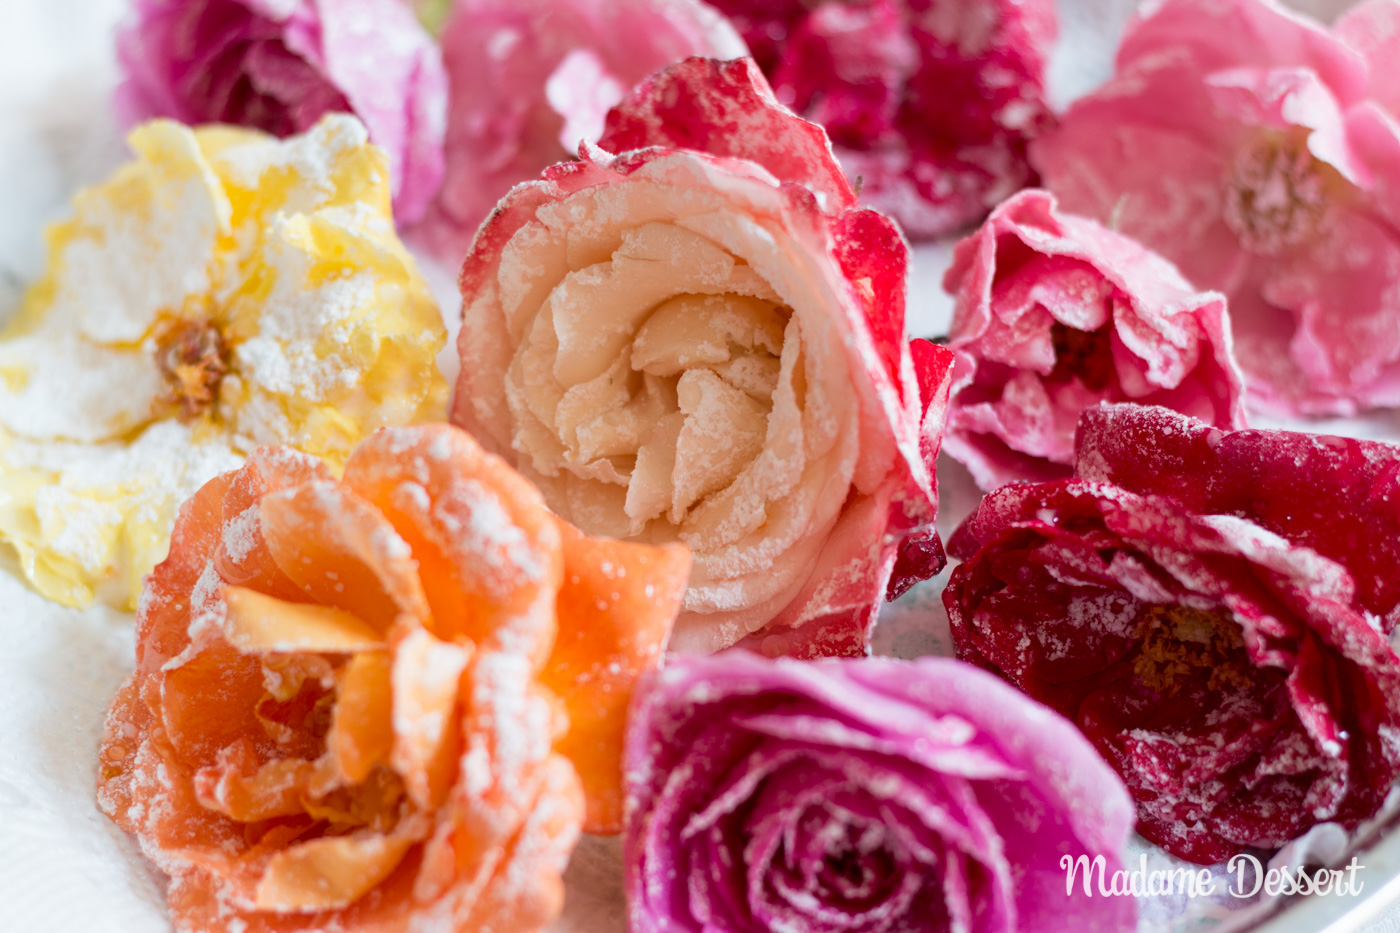 Kandierte Rosenblüten – Ein Fest für die Sinne | Madame Dessert